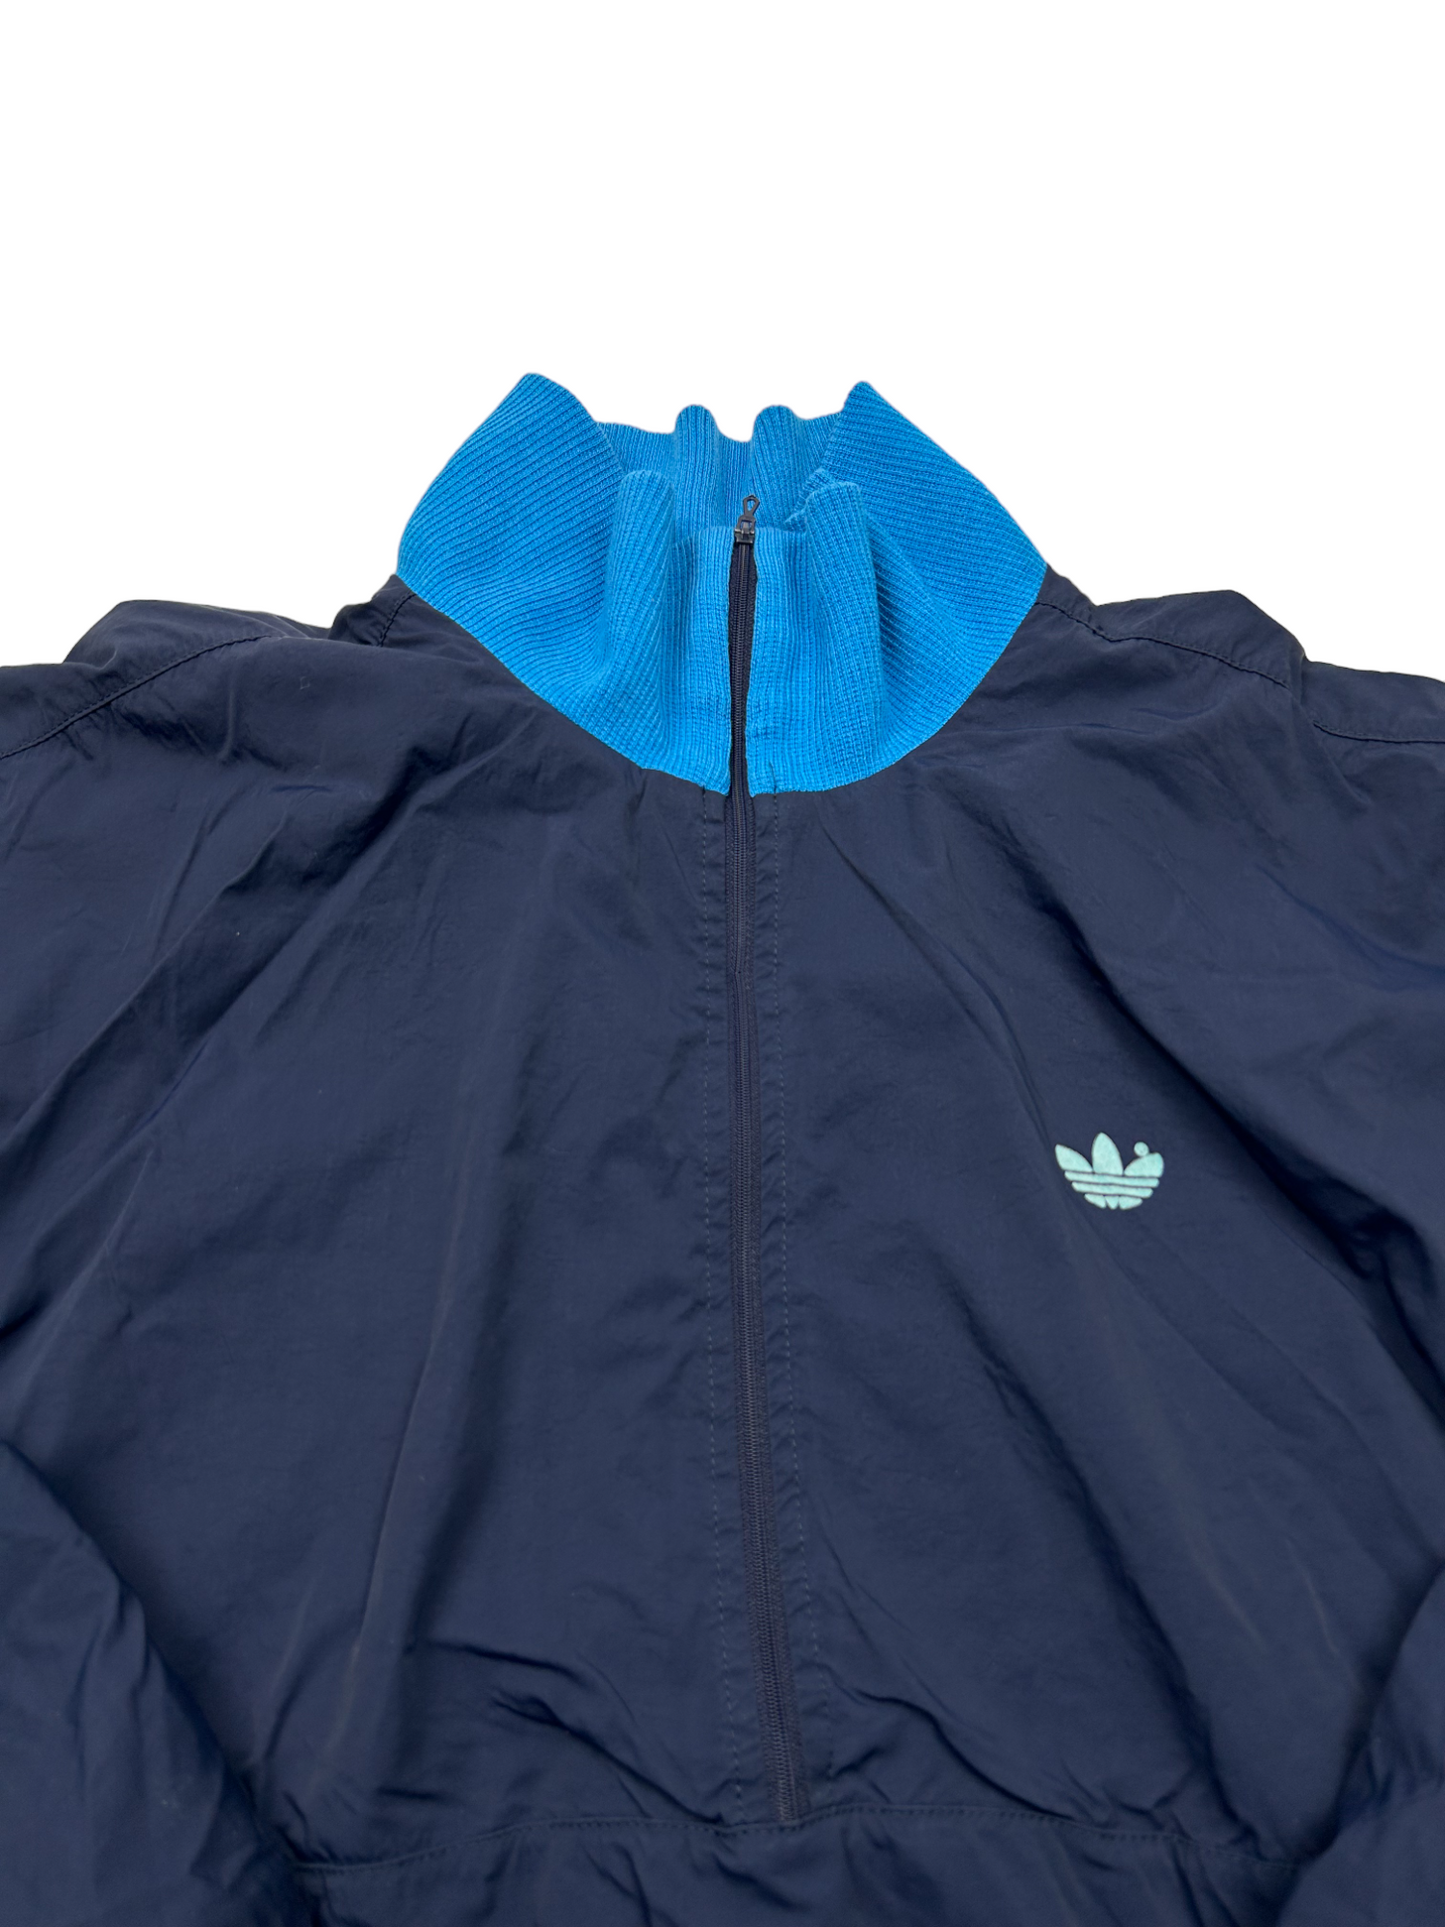 Adidas Blue Jacket